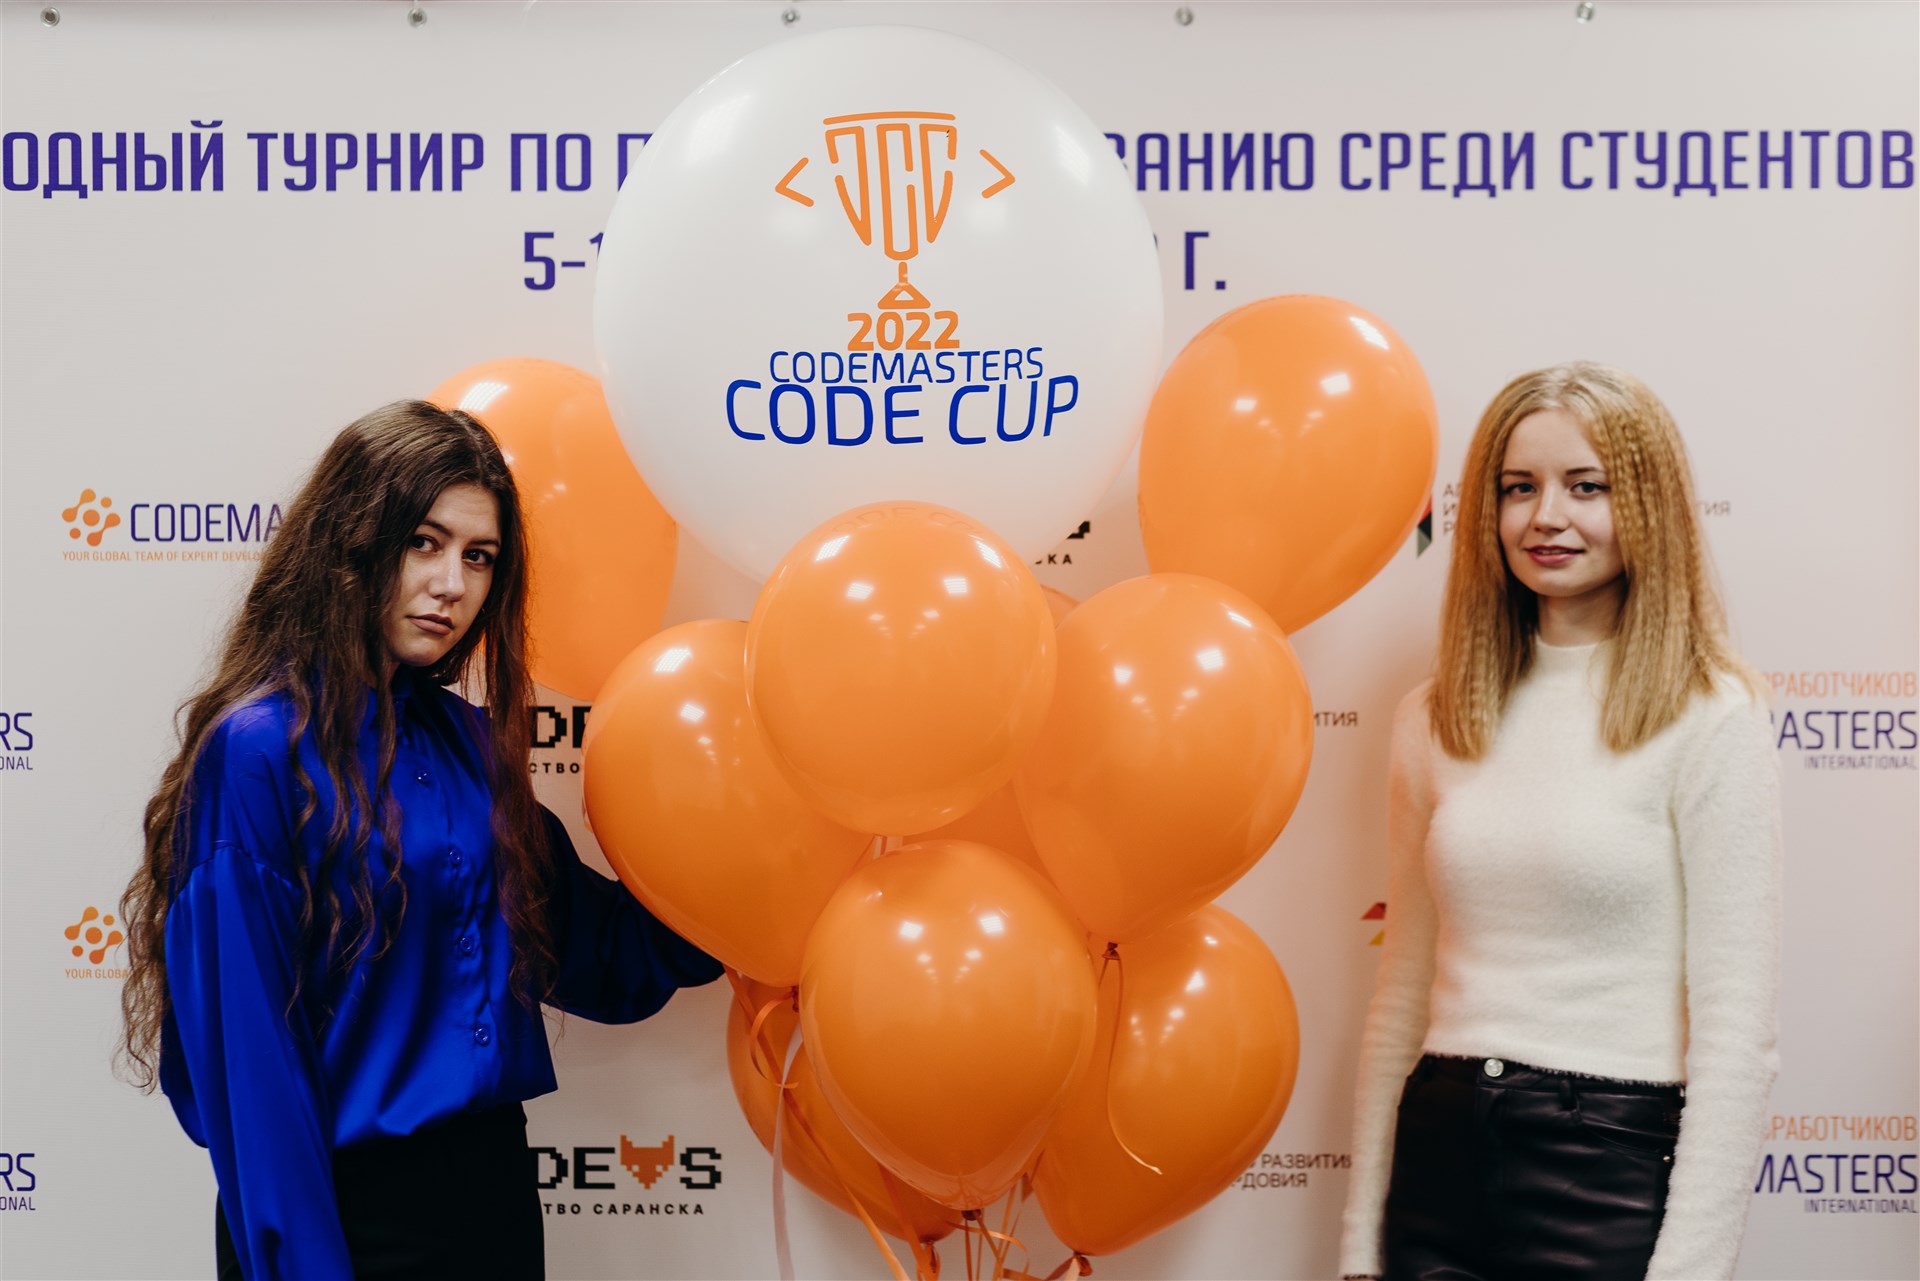 Codemasters Code Cup Саранск 2022 - 20